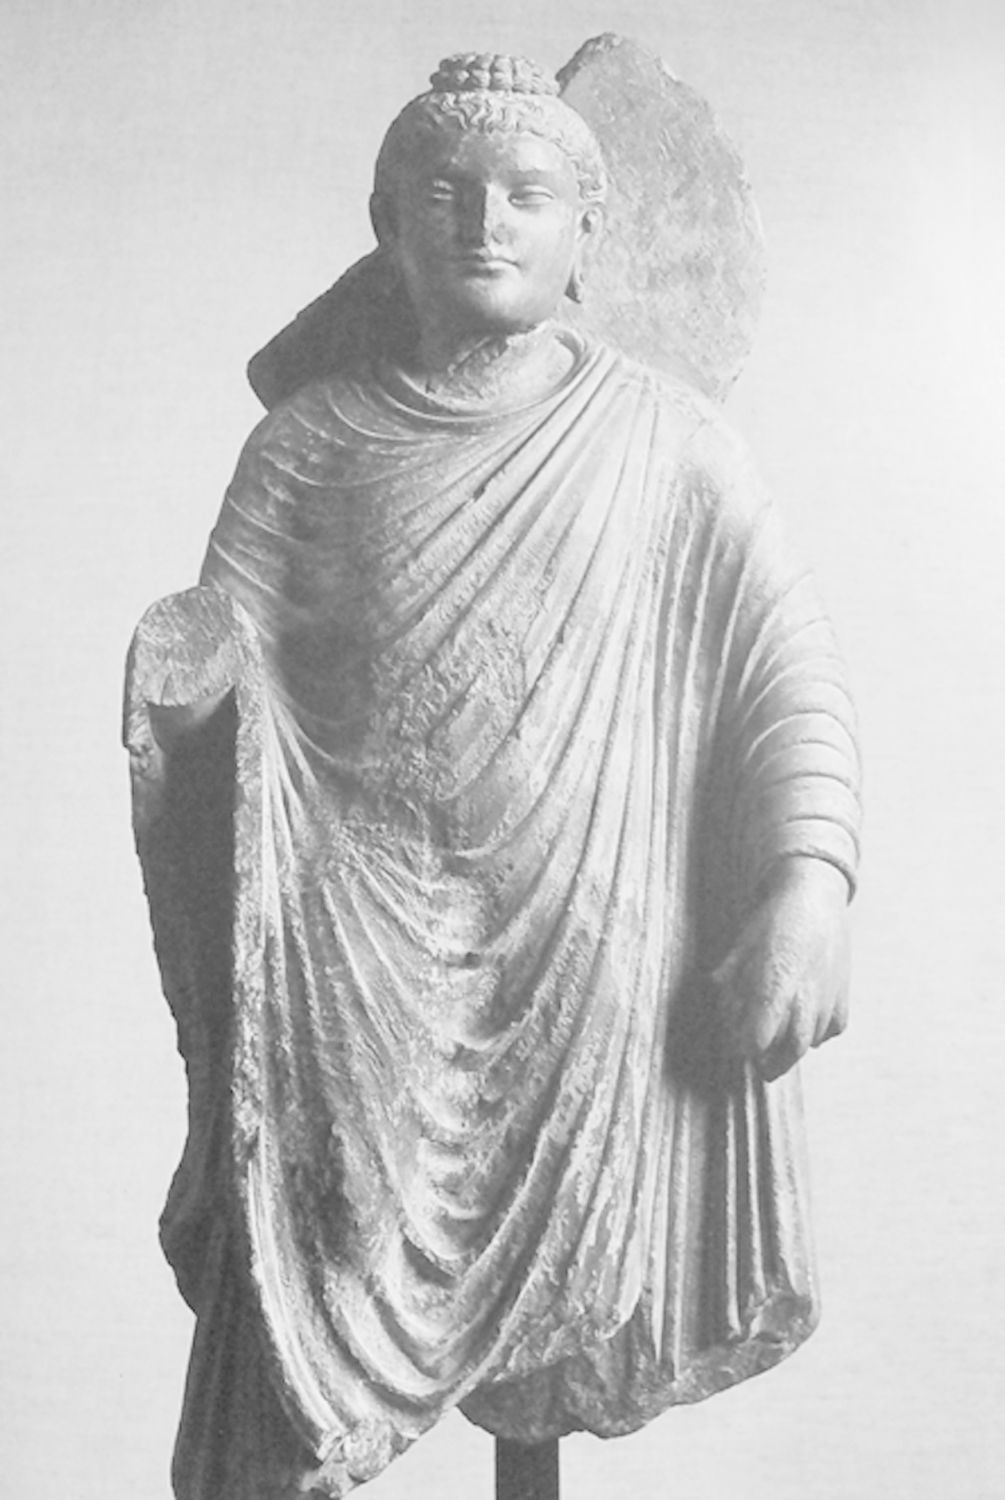 图1-30 释迦牟尼立像 犍陀罗地区 3～4世纪 印度昌迪加尔 国家博物馆藏